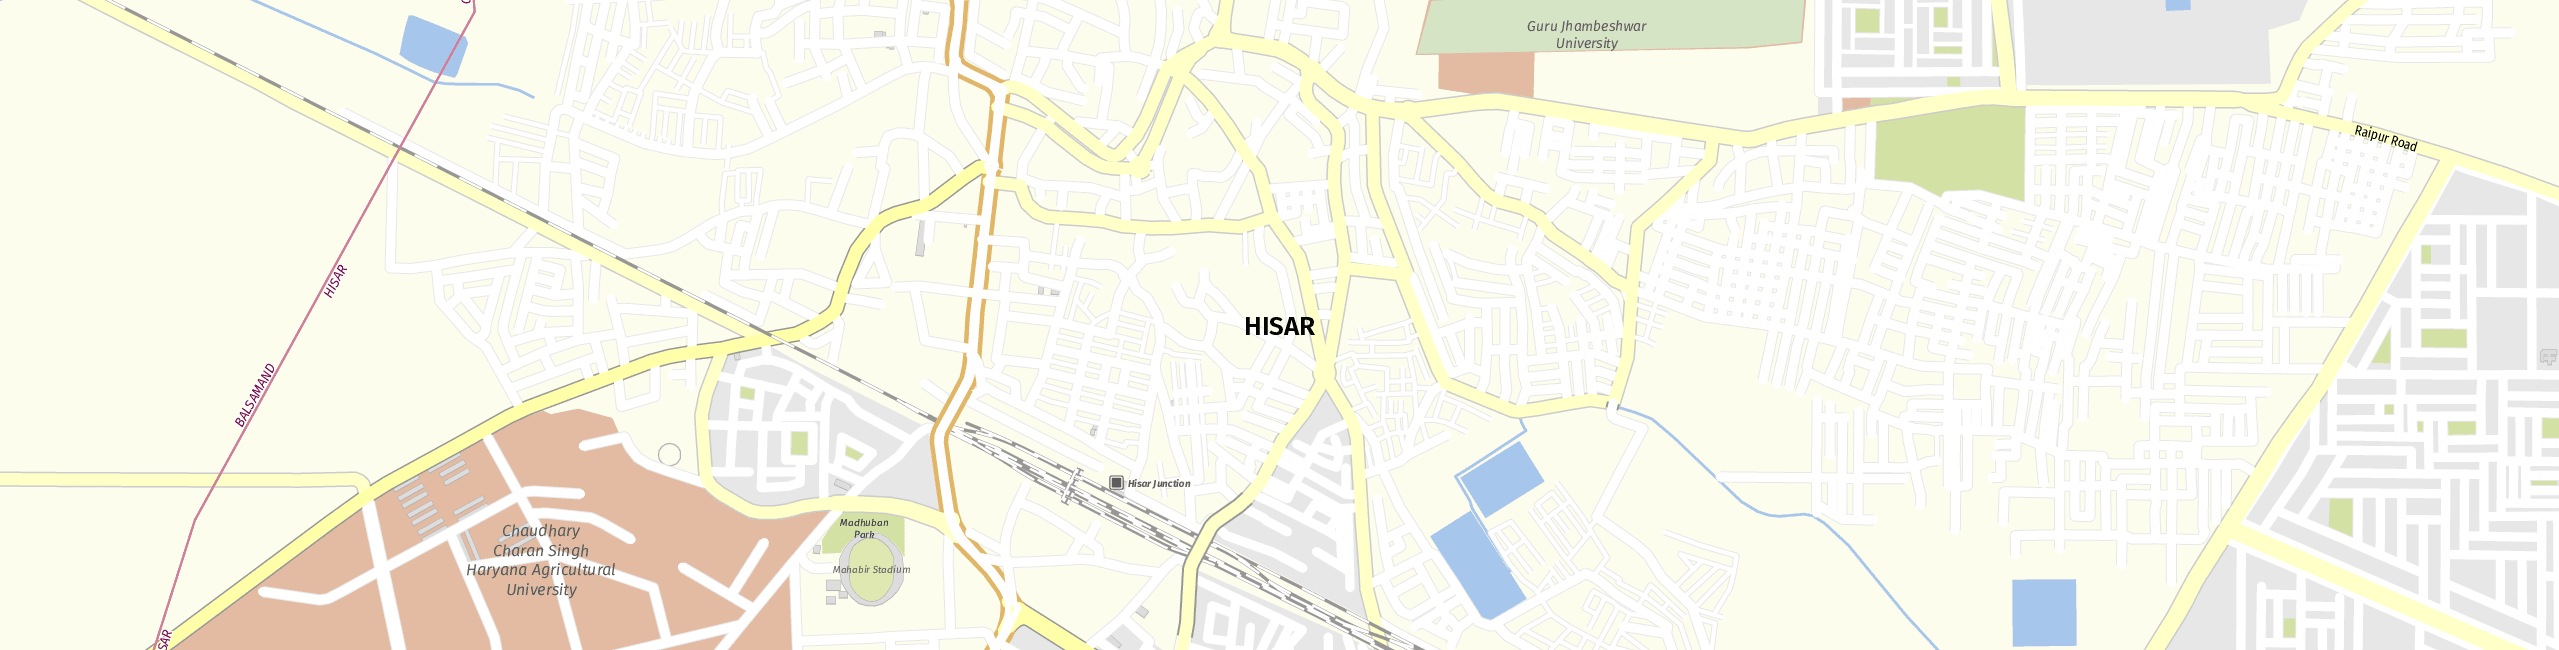 Stadtplan Hisar zum Downloaden.